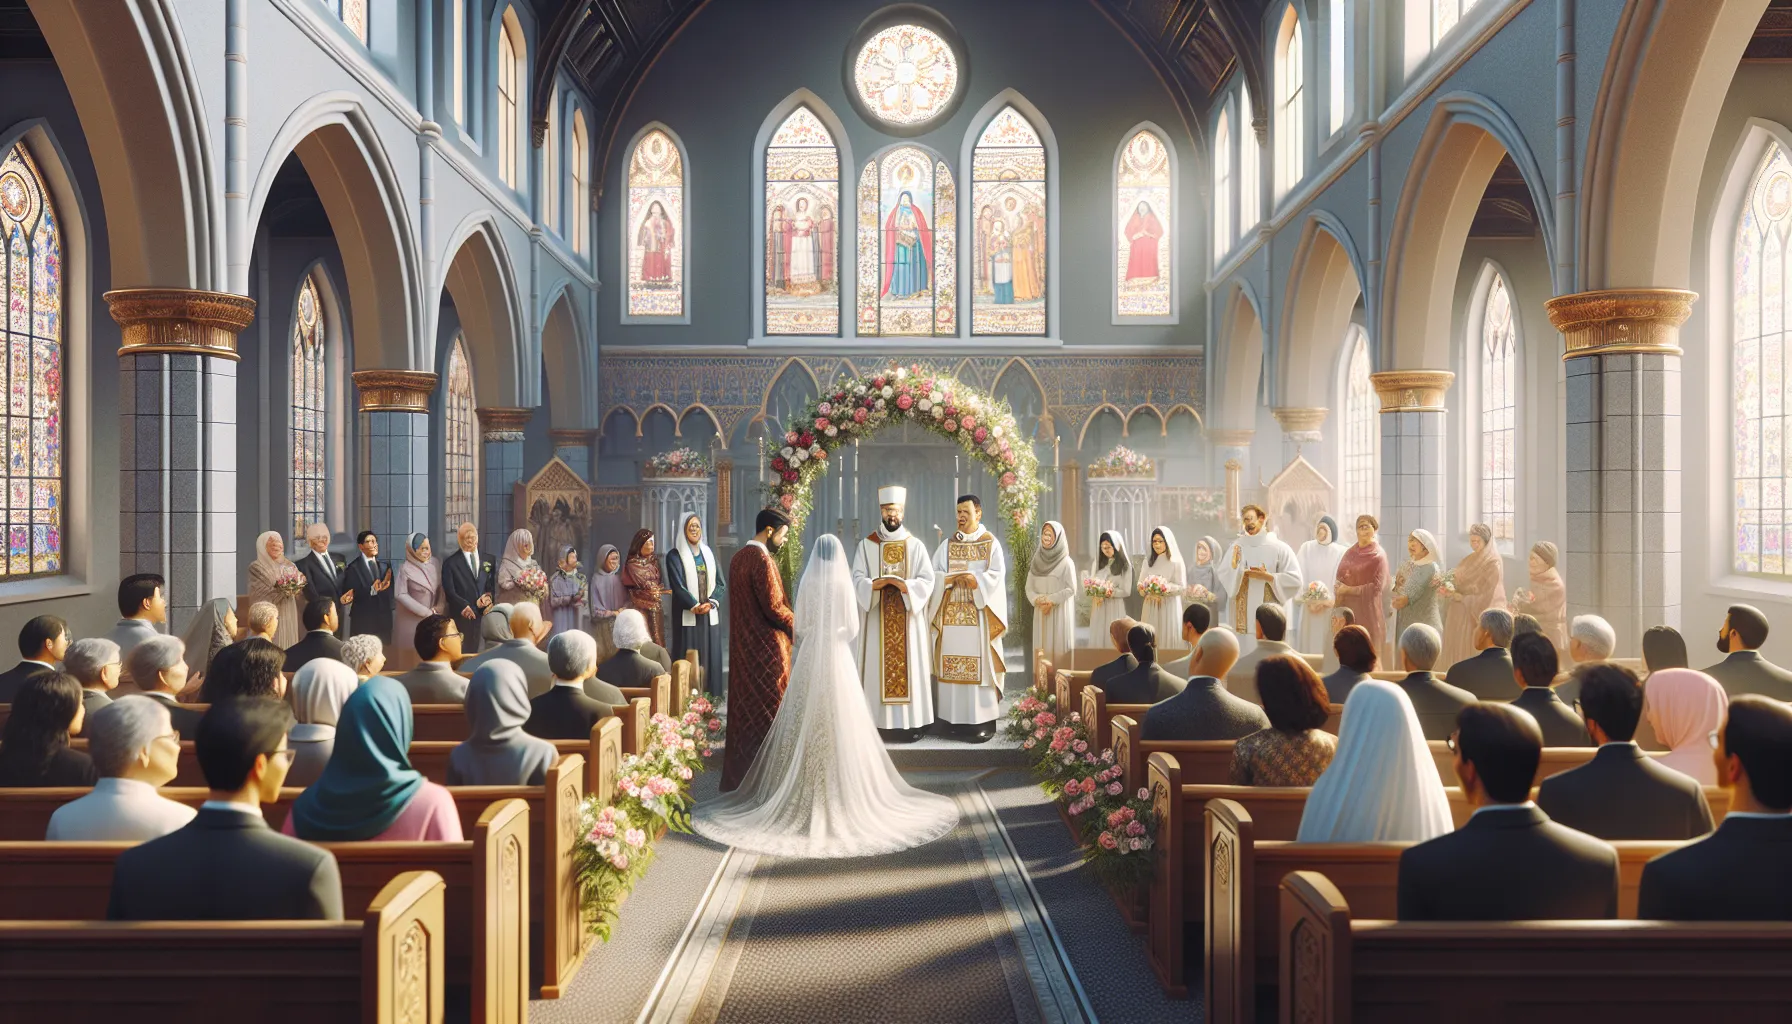 Una imagen representando aspectos de un matrimonio cristiano.